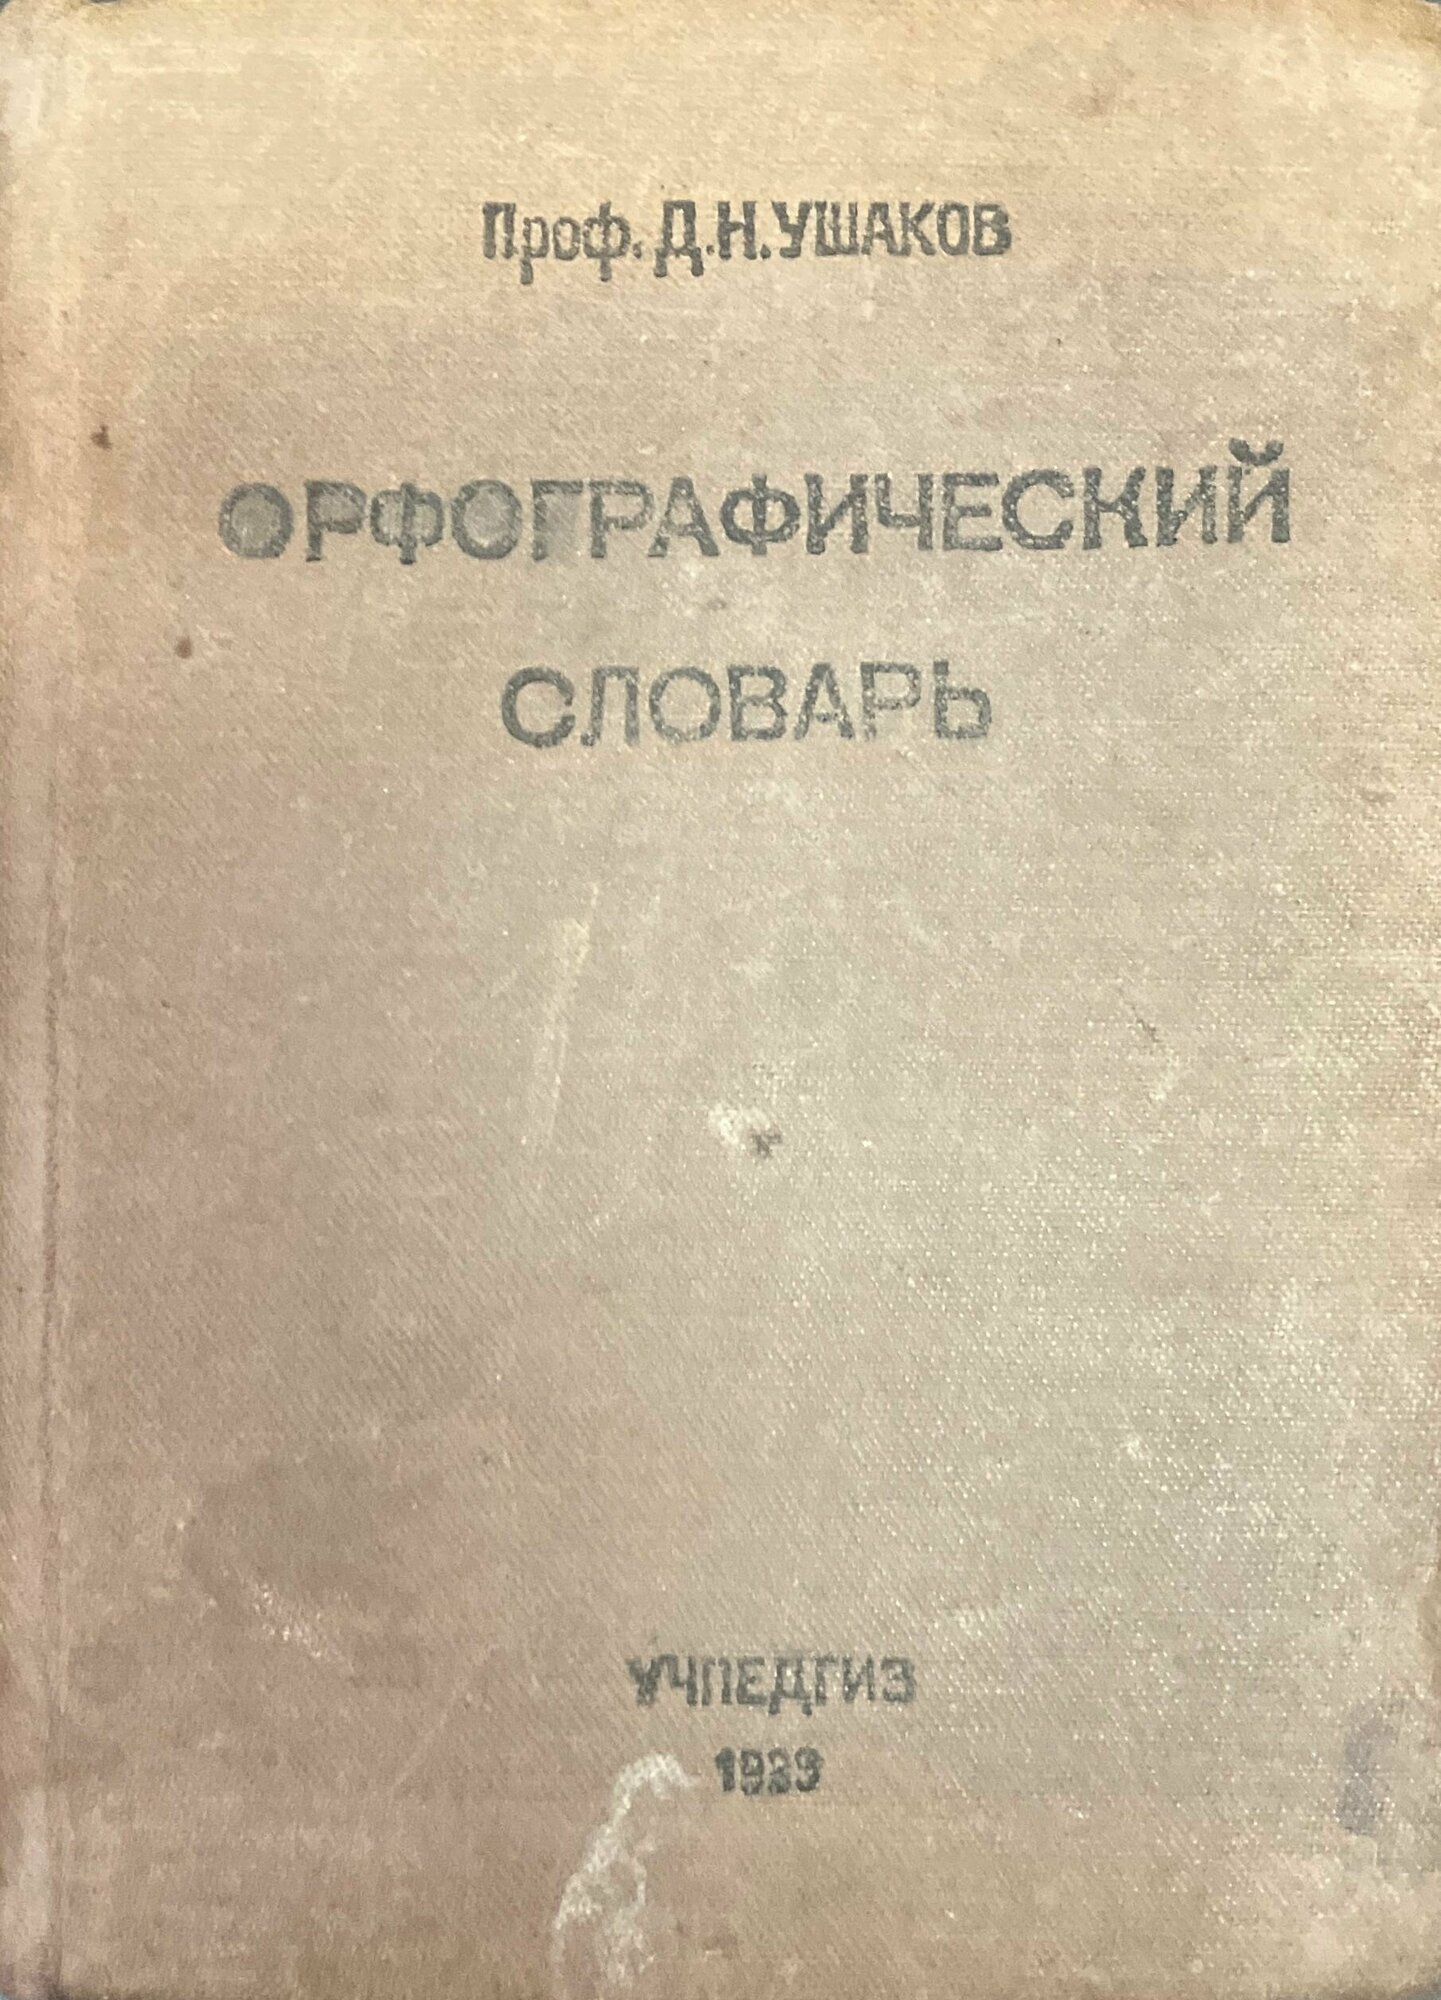 Д. Н. Ушаков. Орфографический словарь 1939 г.